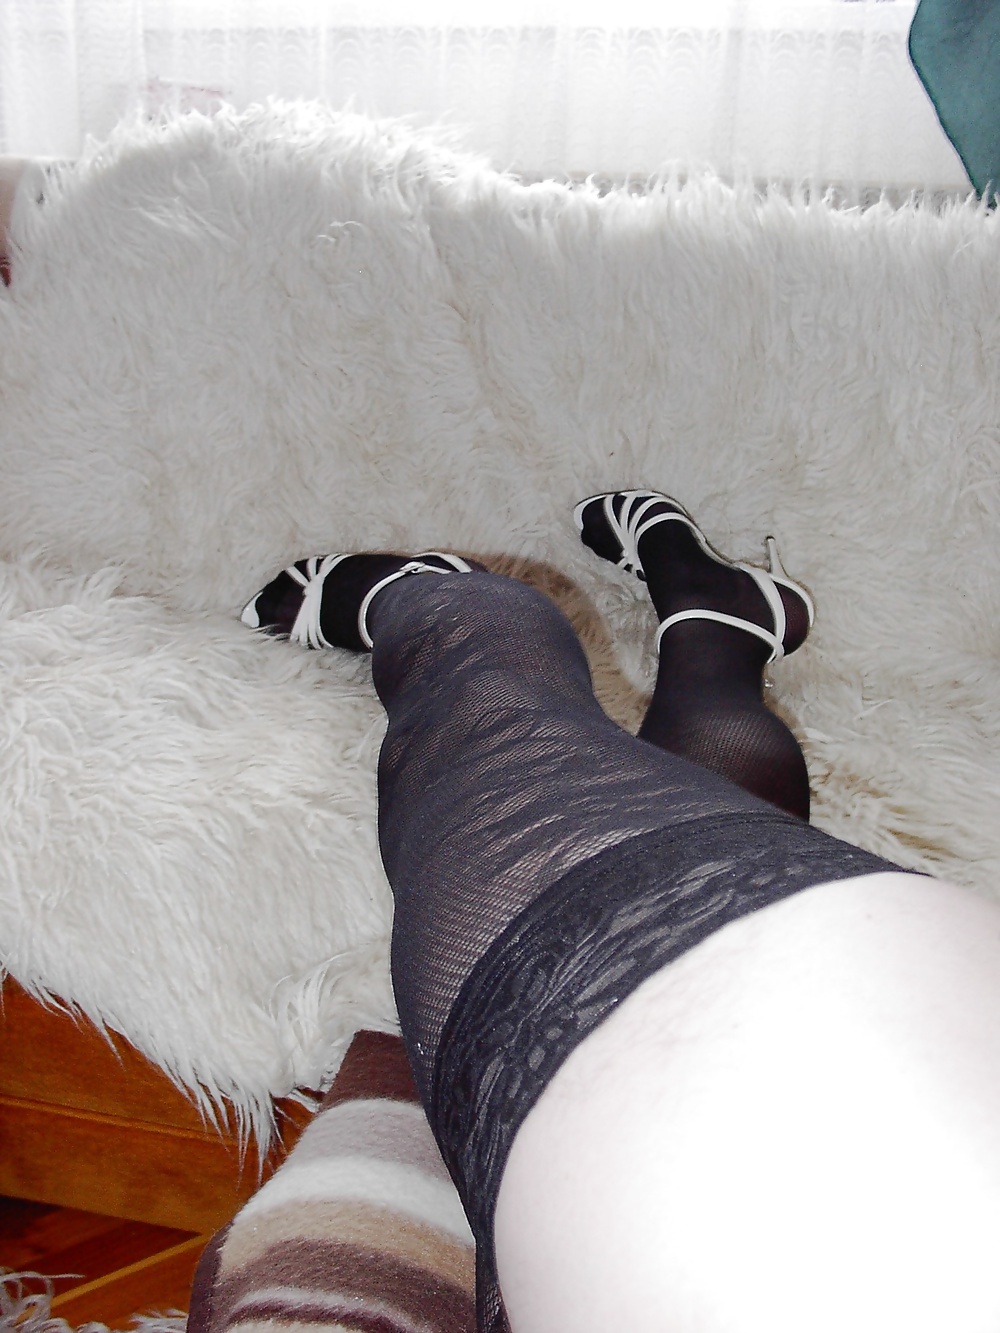 My 6 inch Spike Heel ItalianHeels - Laura 'queenly' Sandals #34310980